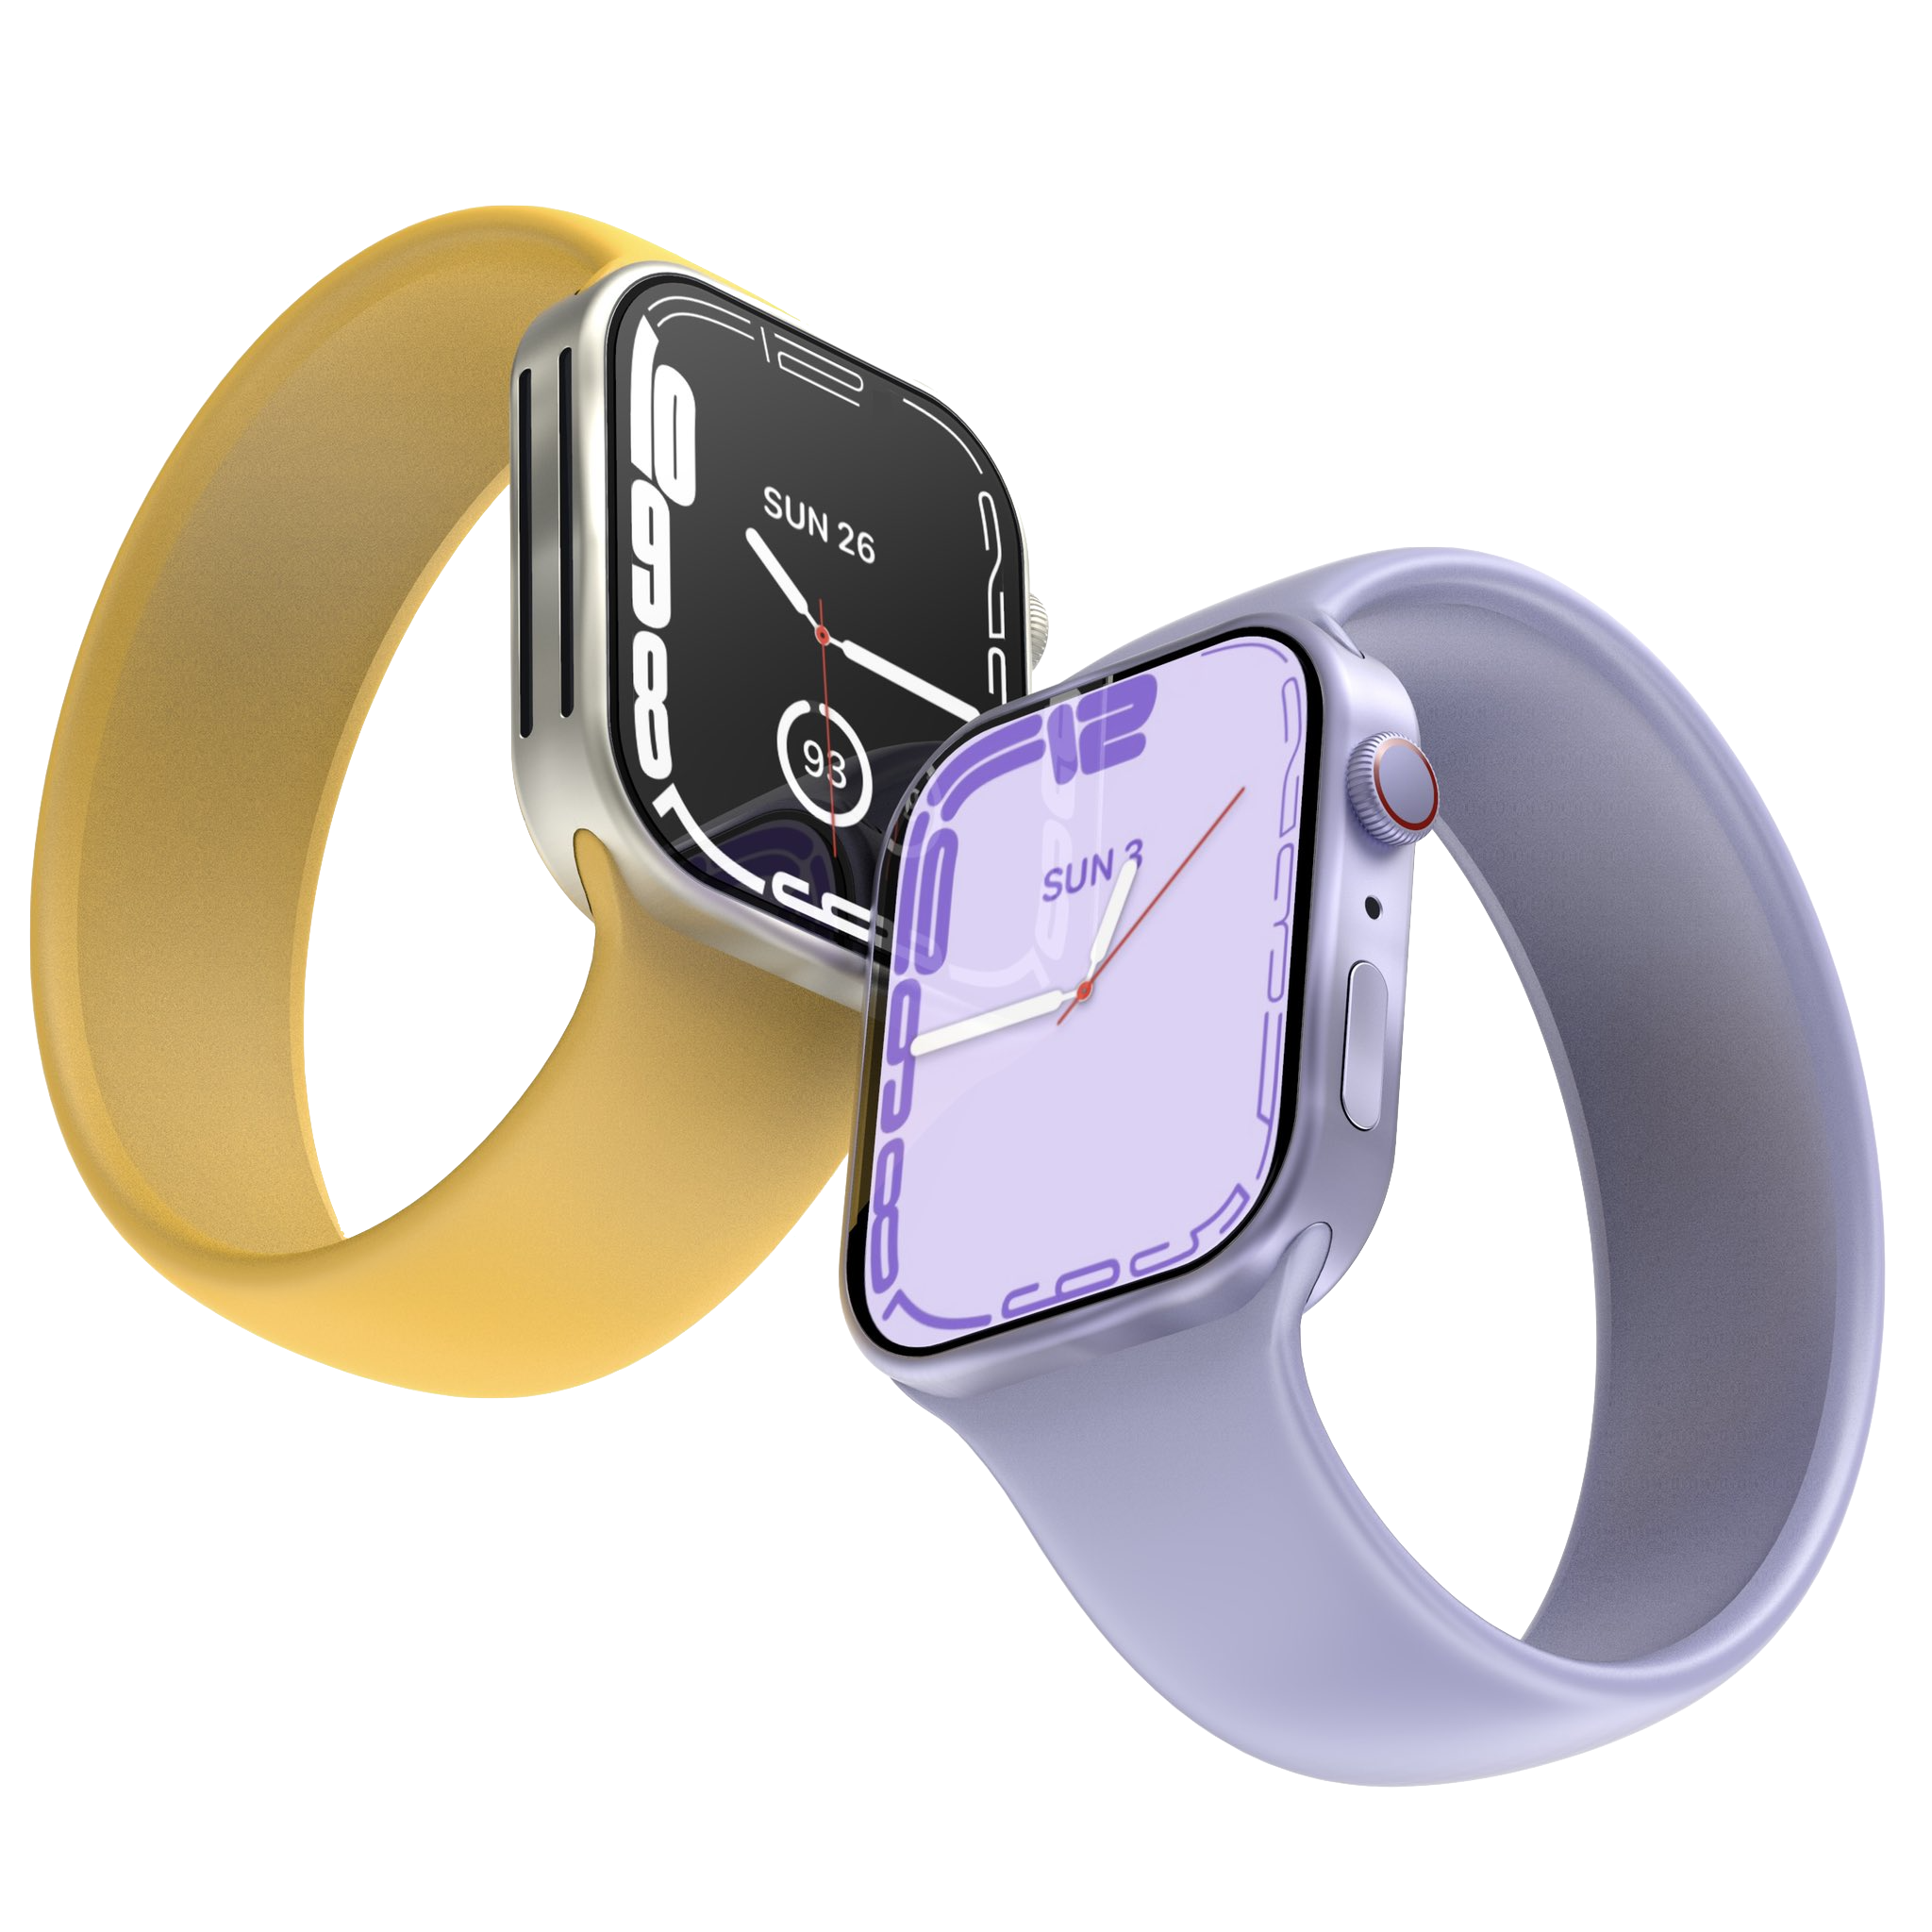 Apple Watch X krijgt mogelijk splinternieuw ontwerp met energiezuiniger scherm